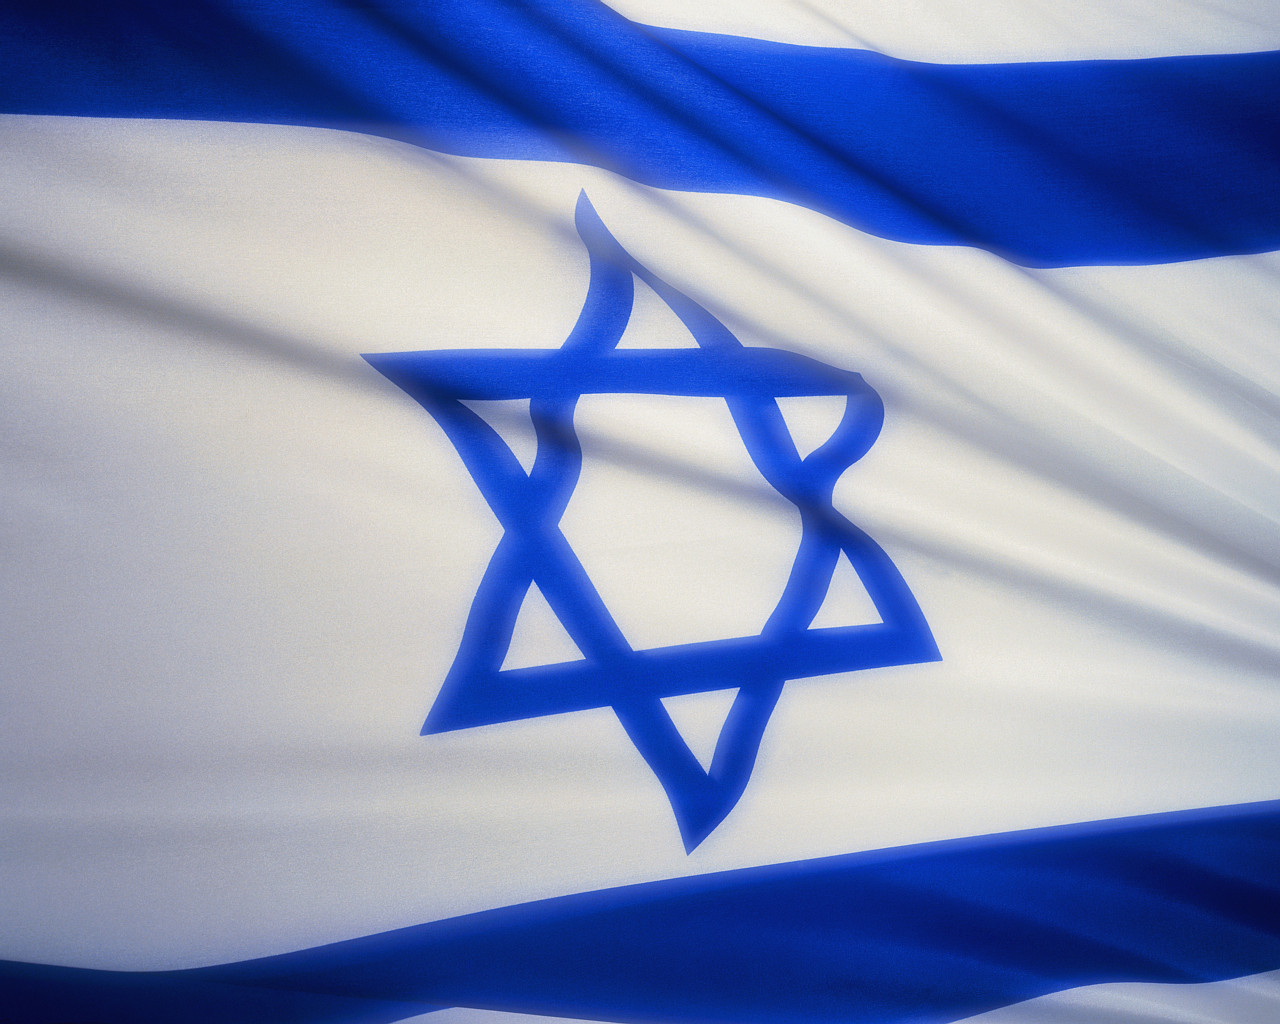 IsraelFlag.jpg